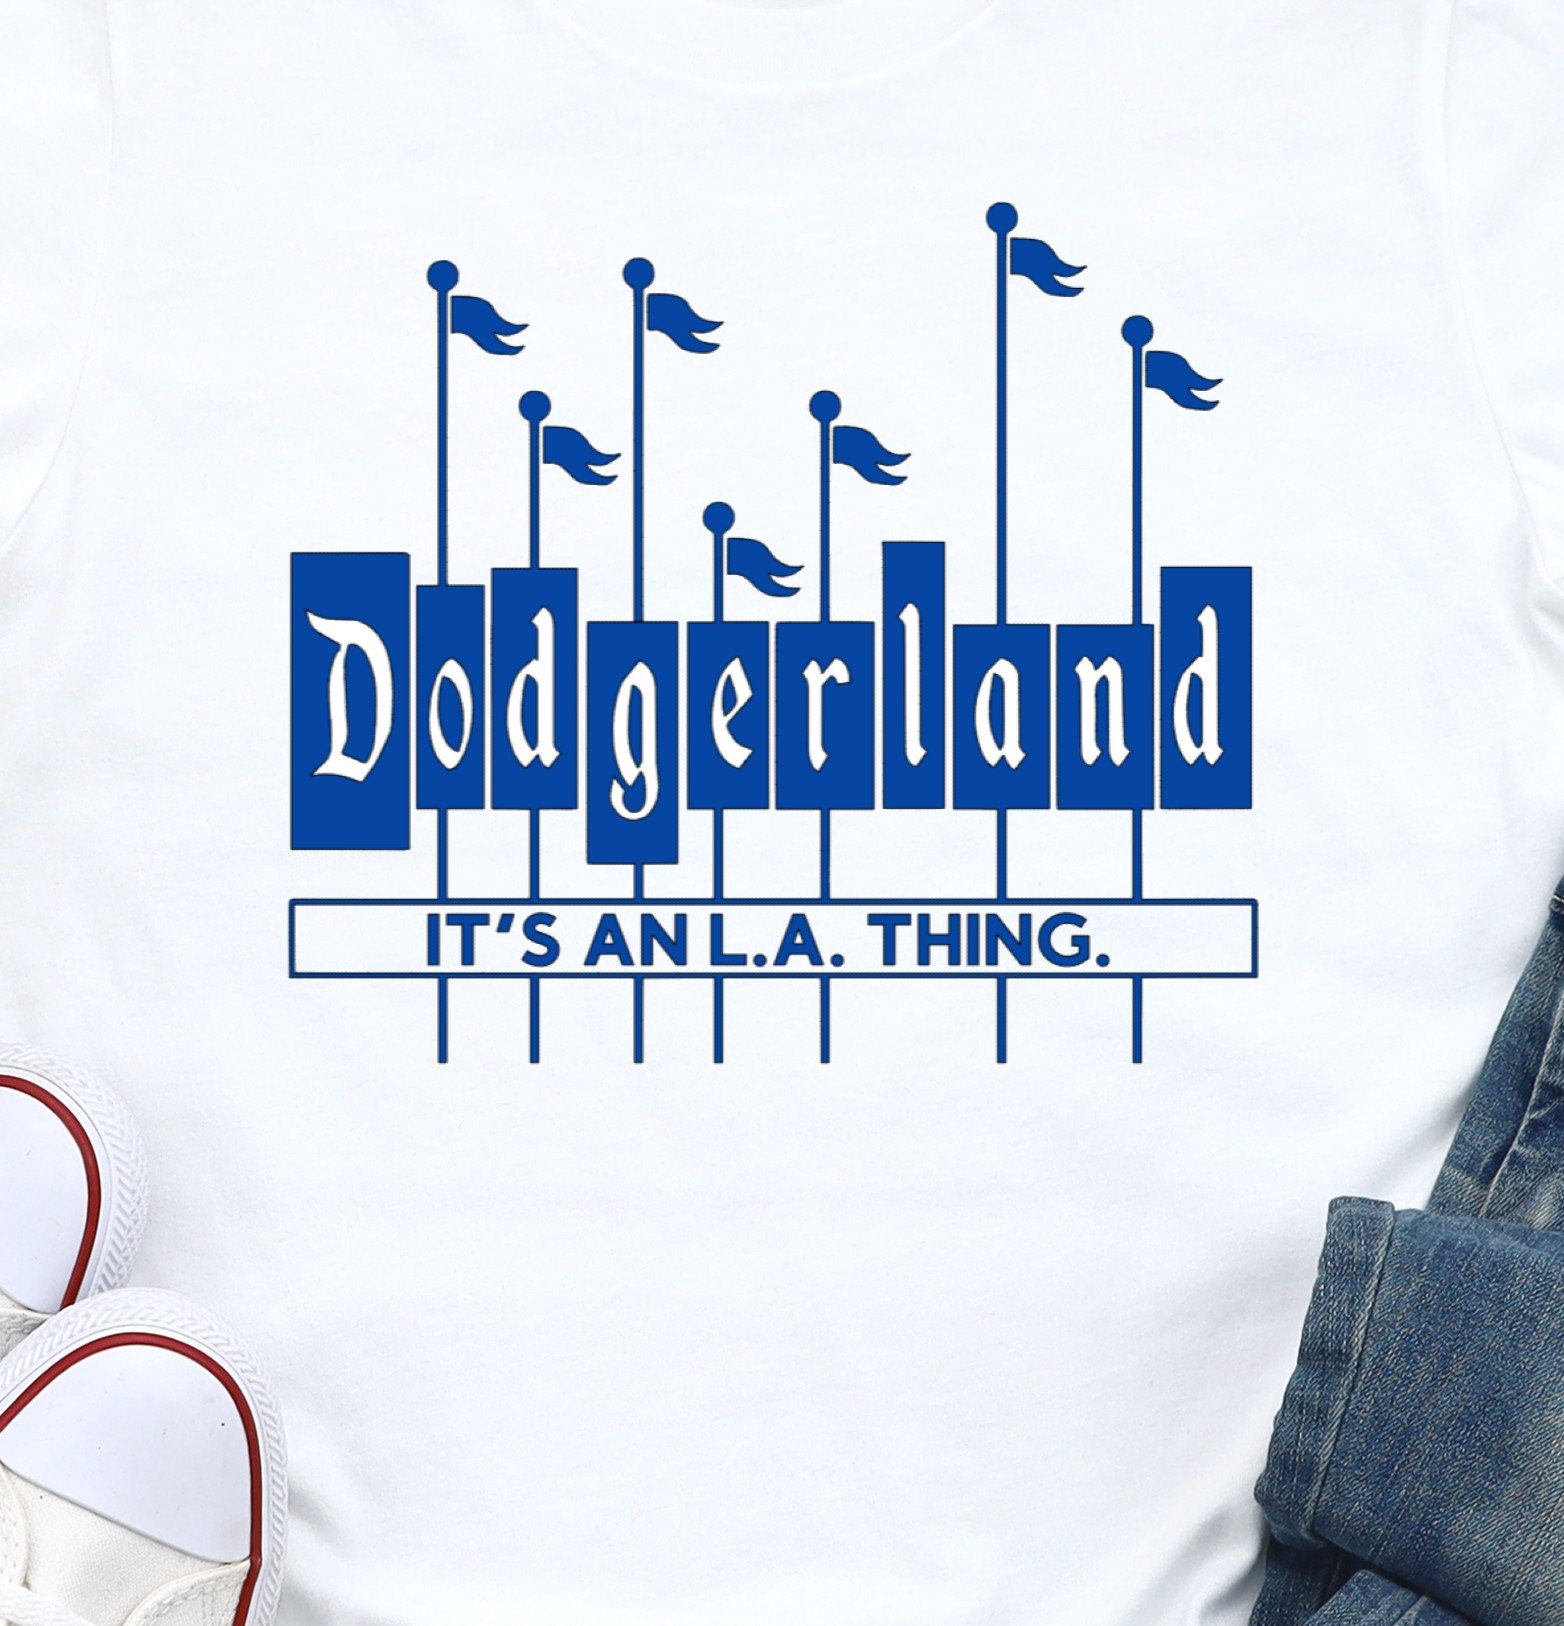 Dodger Land Disney Dodgers Dodgerland 